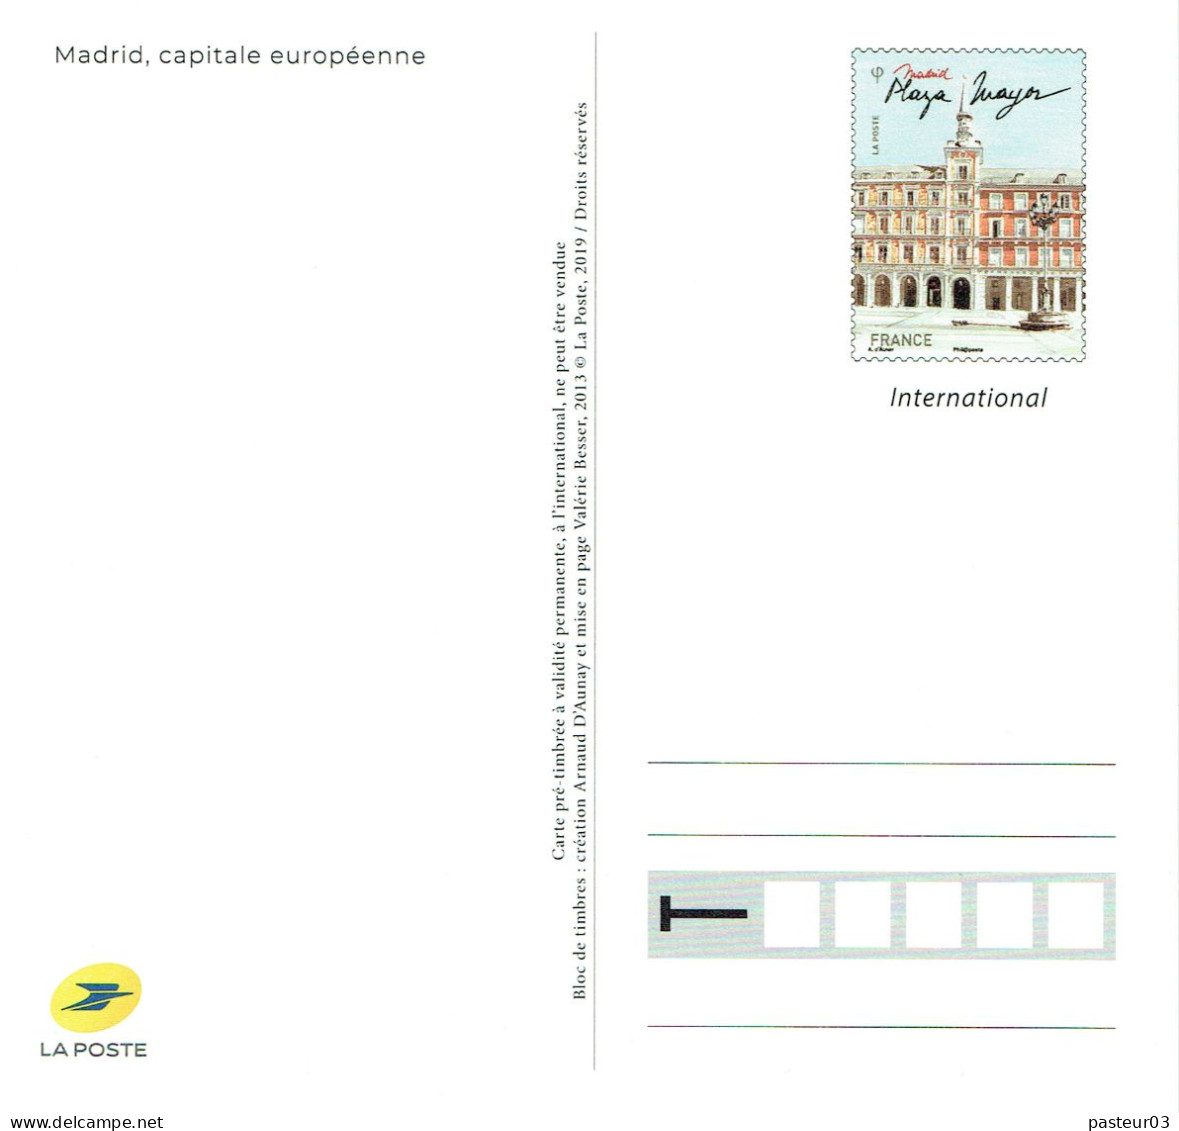 Serie de 4 Entiers Capitales Européennes éditées par le Musée de La Poste voir liste Tarif international